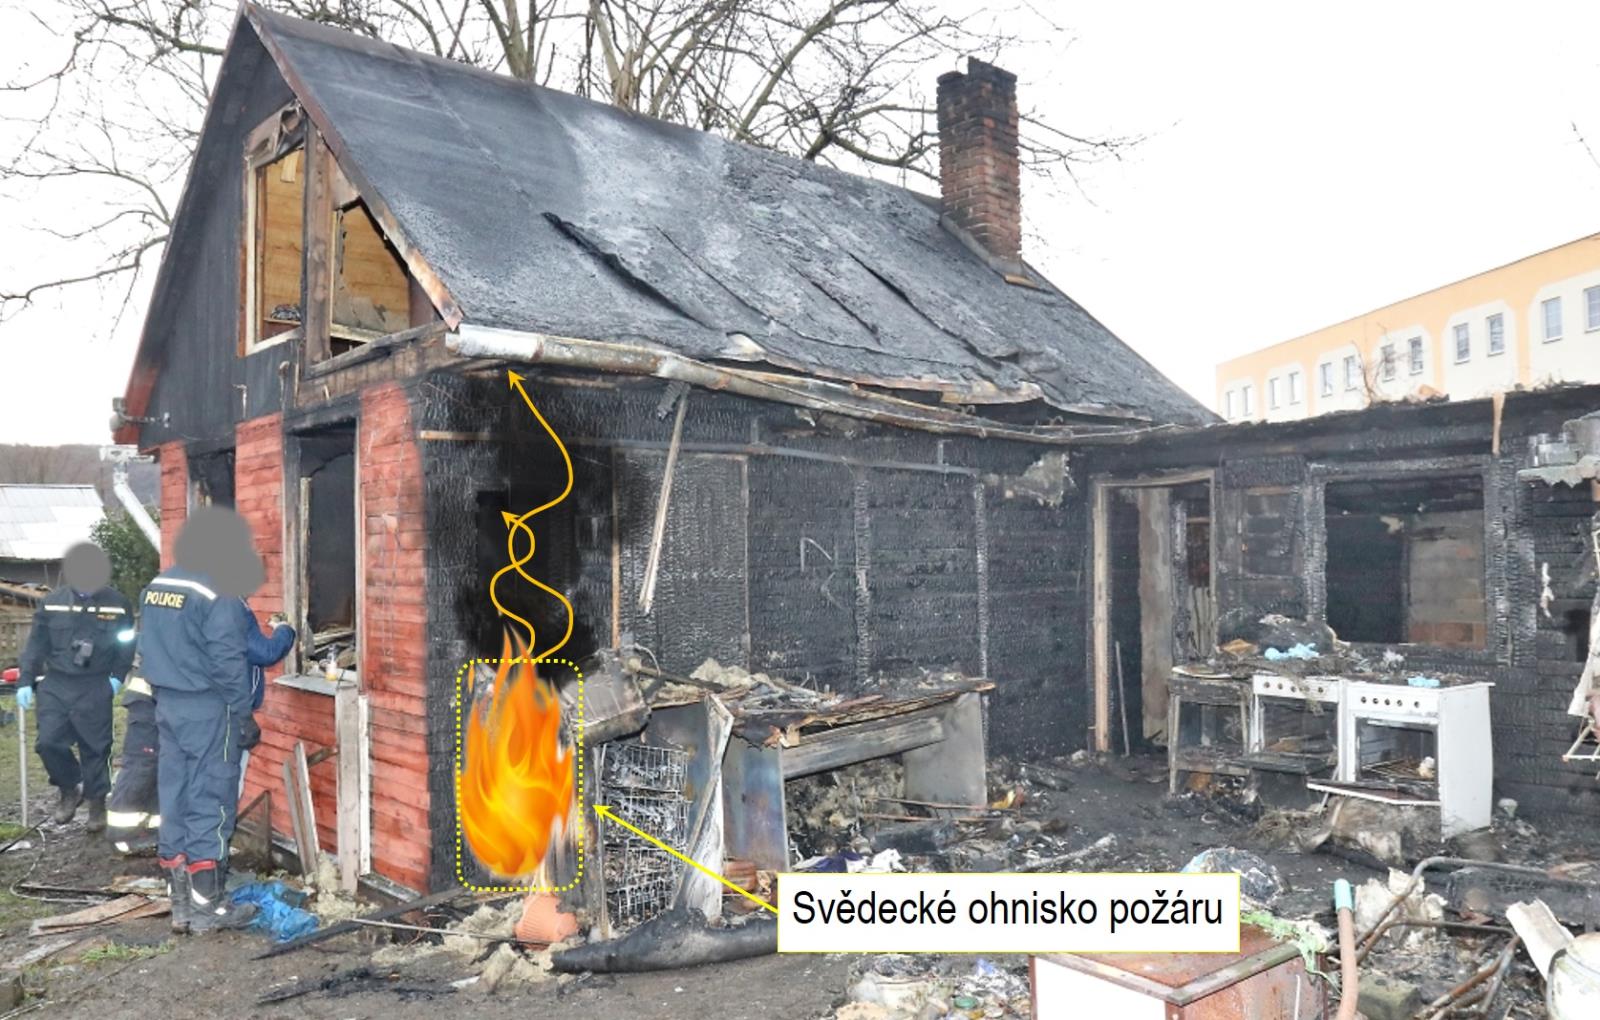 Obr. 1 Pohled na chatu a znázornění oblasti svědeckého ohniska požáru